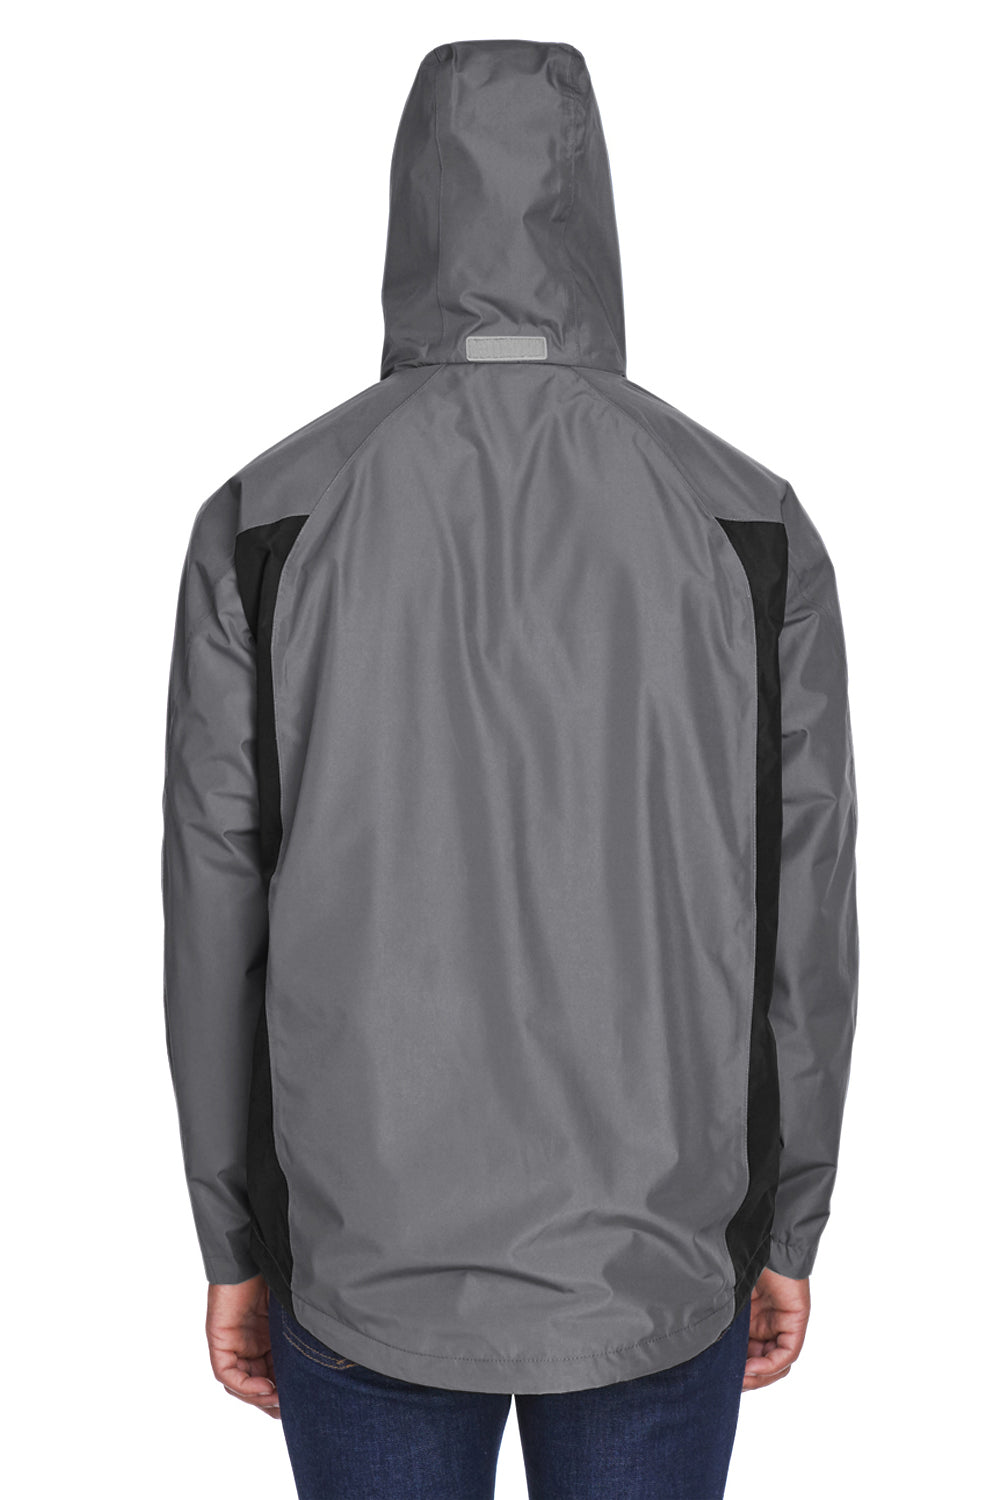 Team 365 TT86 Mens Dominator Waterproof Full Zip Hooded Jacket Graphite Grey Back